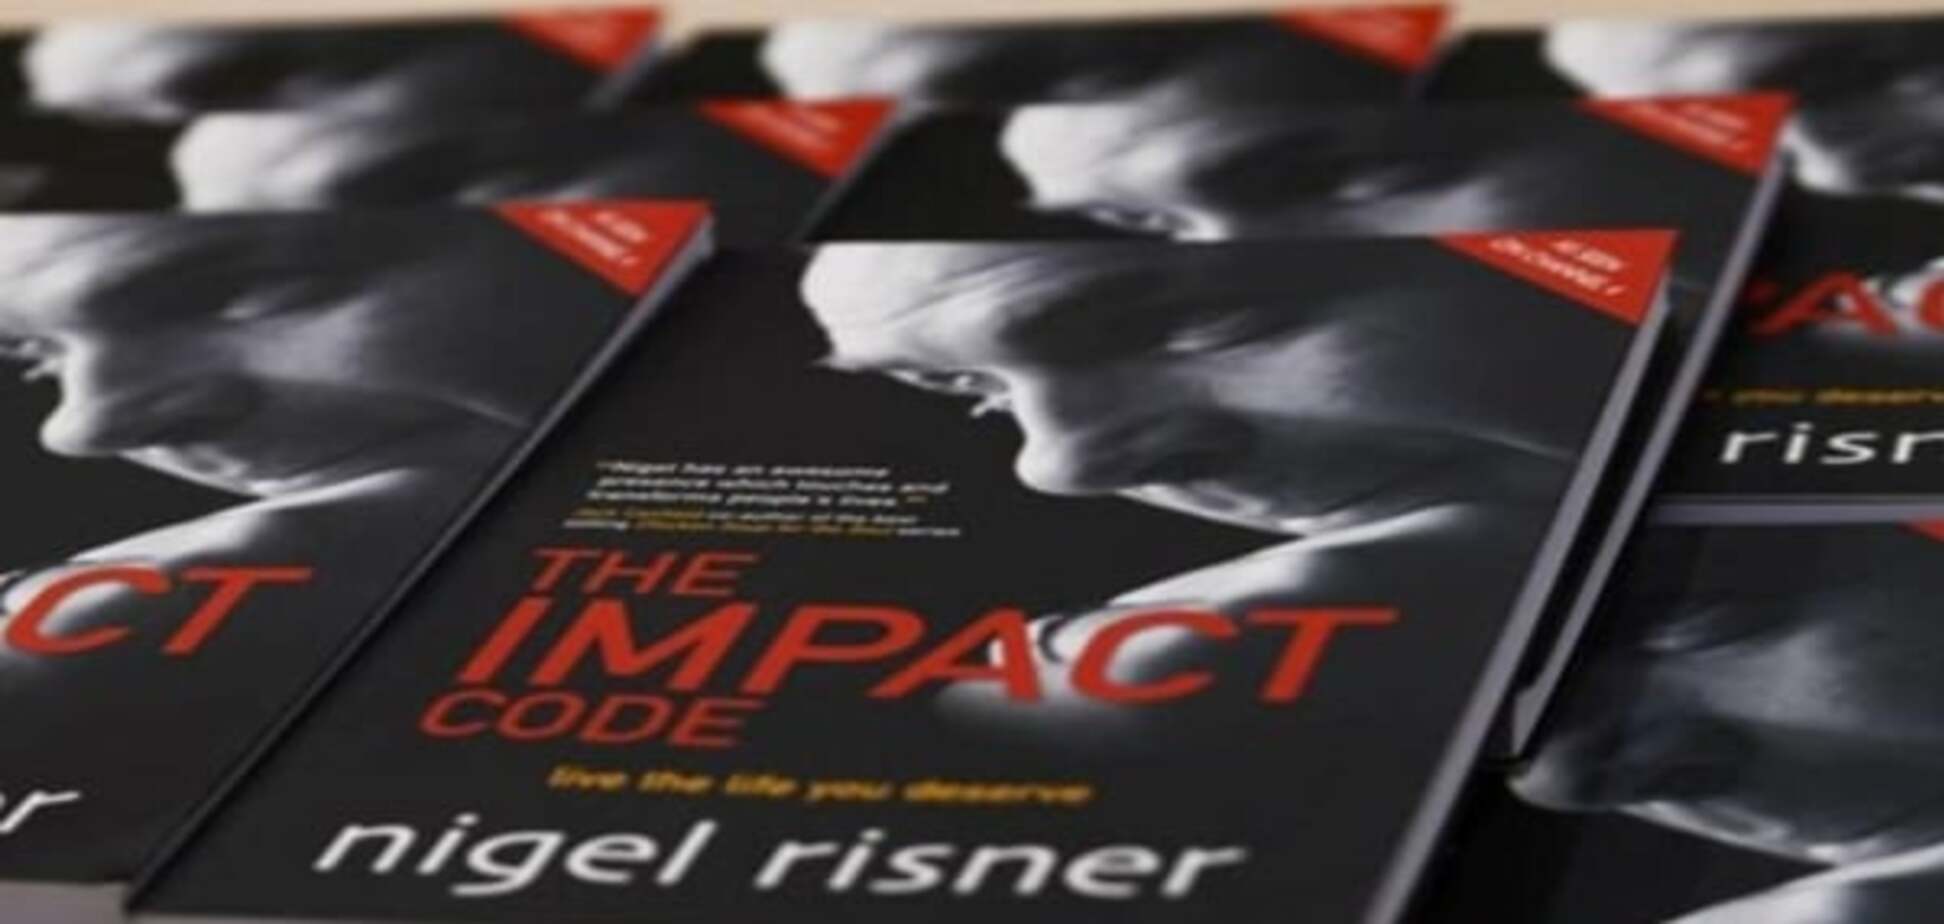 16 октября мастер-класс Найджела Риснера 'IMPACT CODE: или новый код для безупречного лидерства'